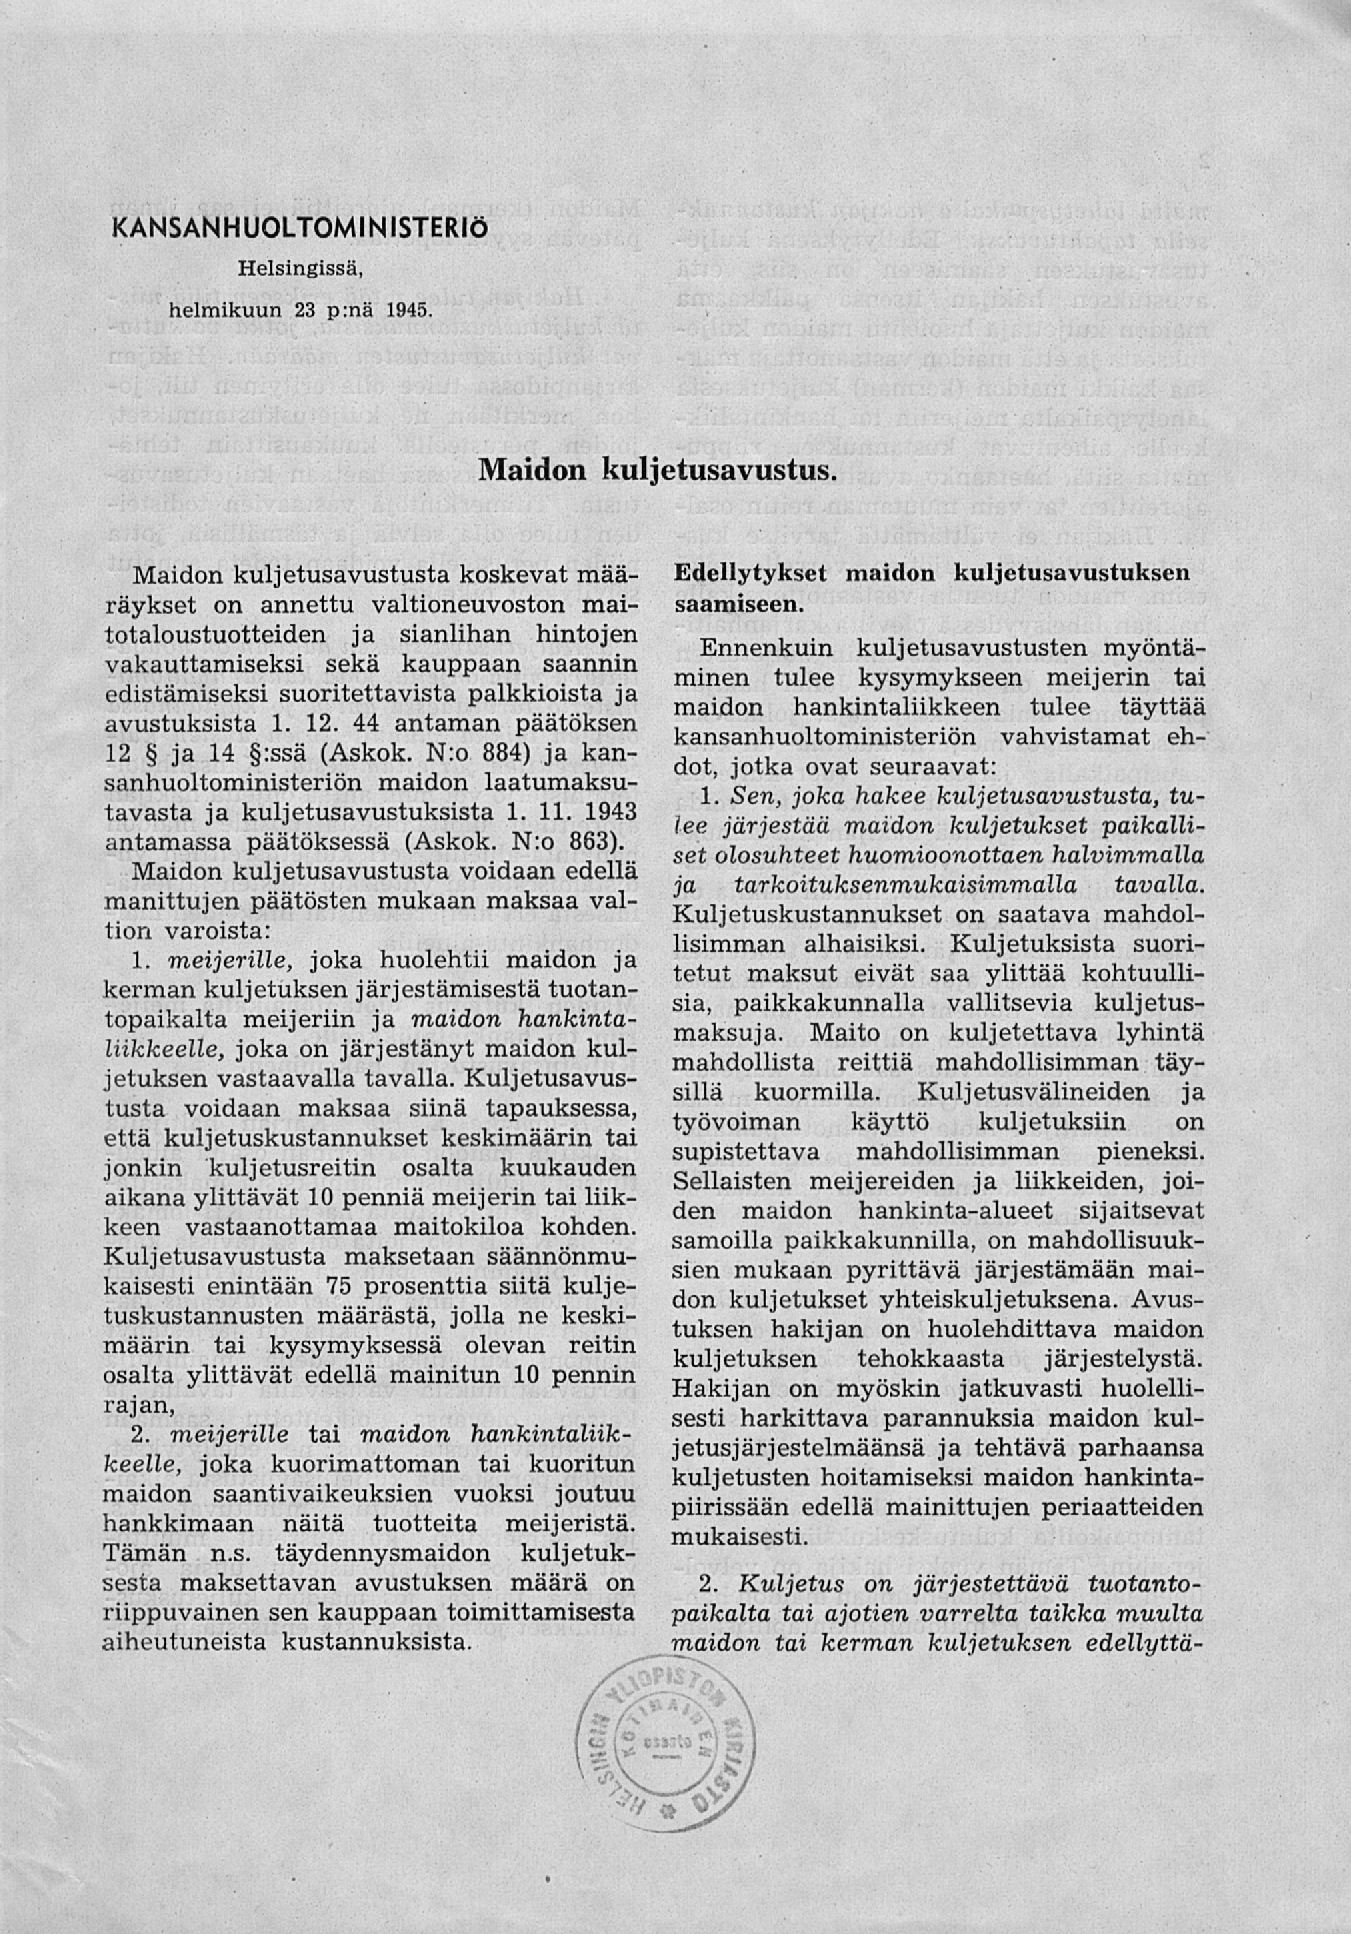 KANSANHUOLTOMINISTERI Helsingissä, helmikuun 23 p:nä 1945. Maidon kuljetusavustus.